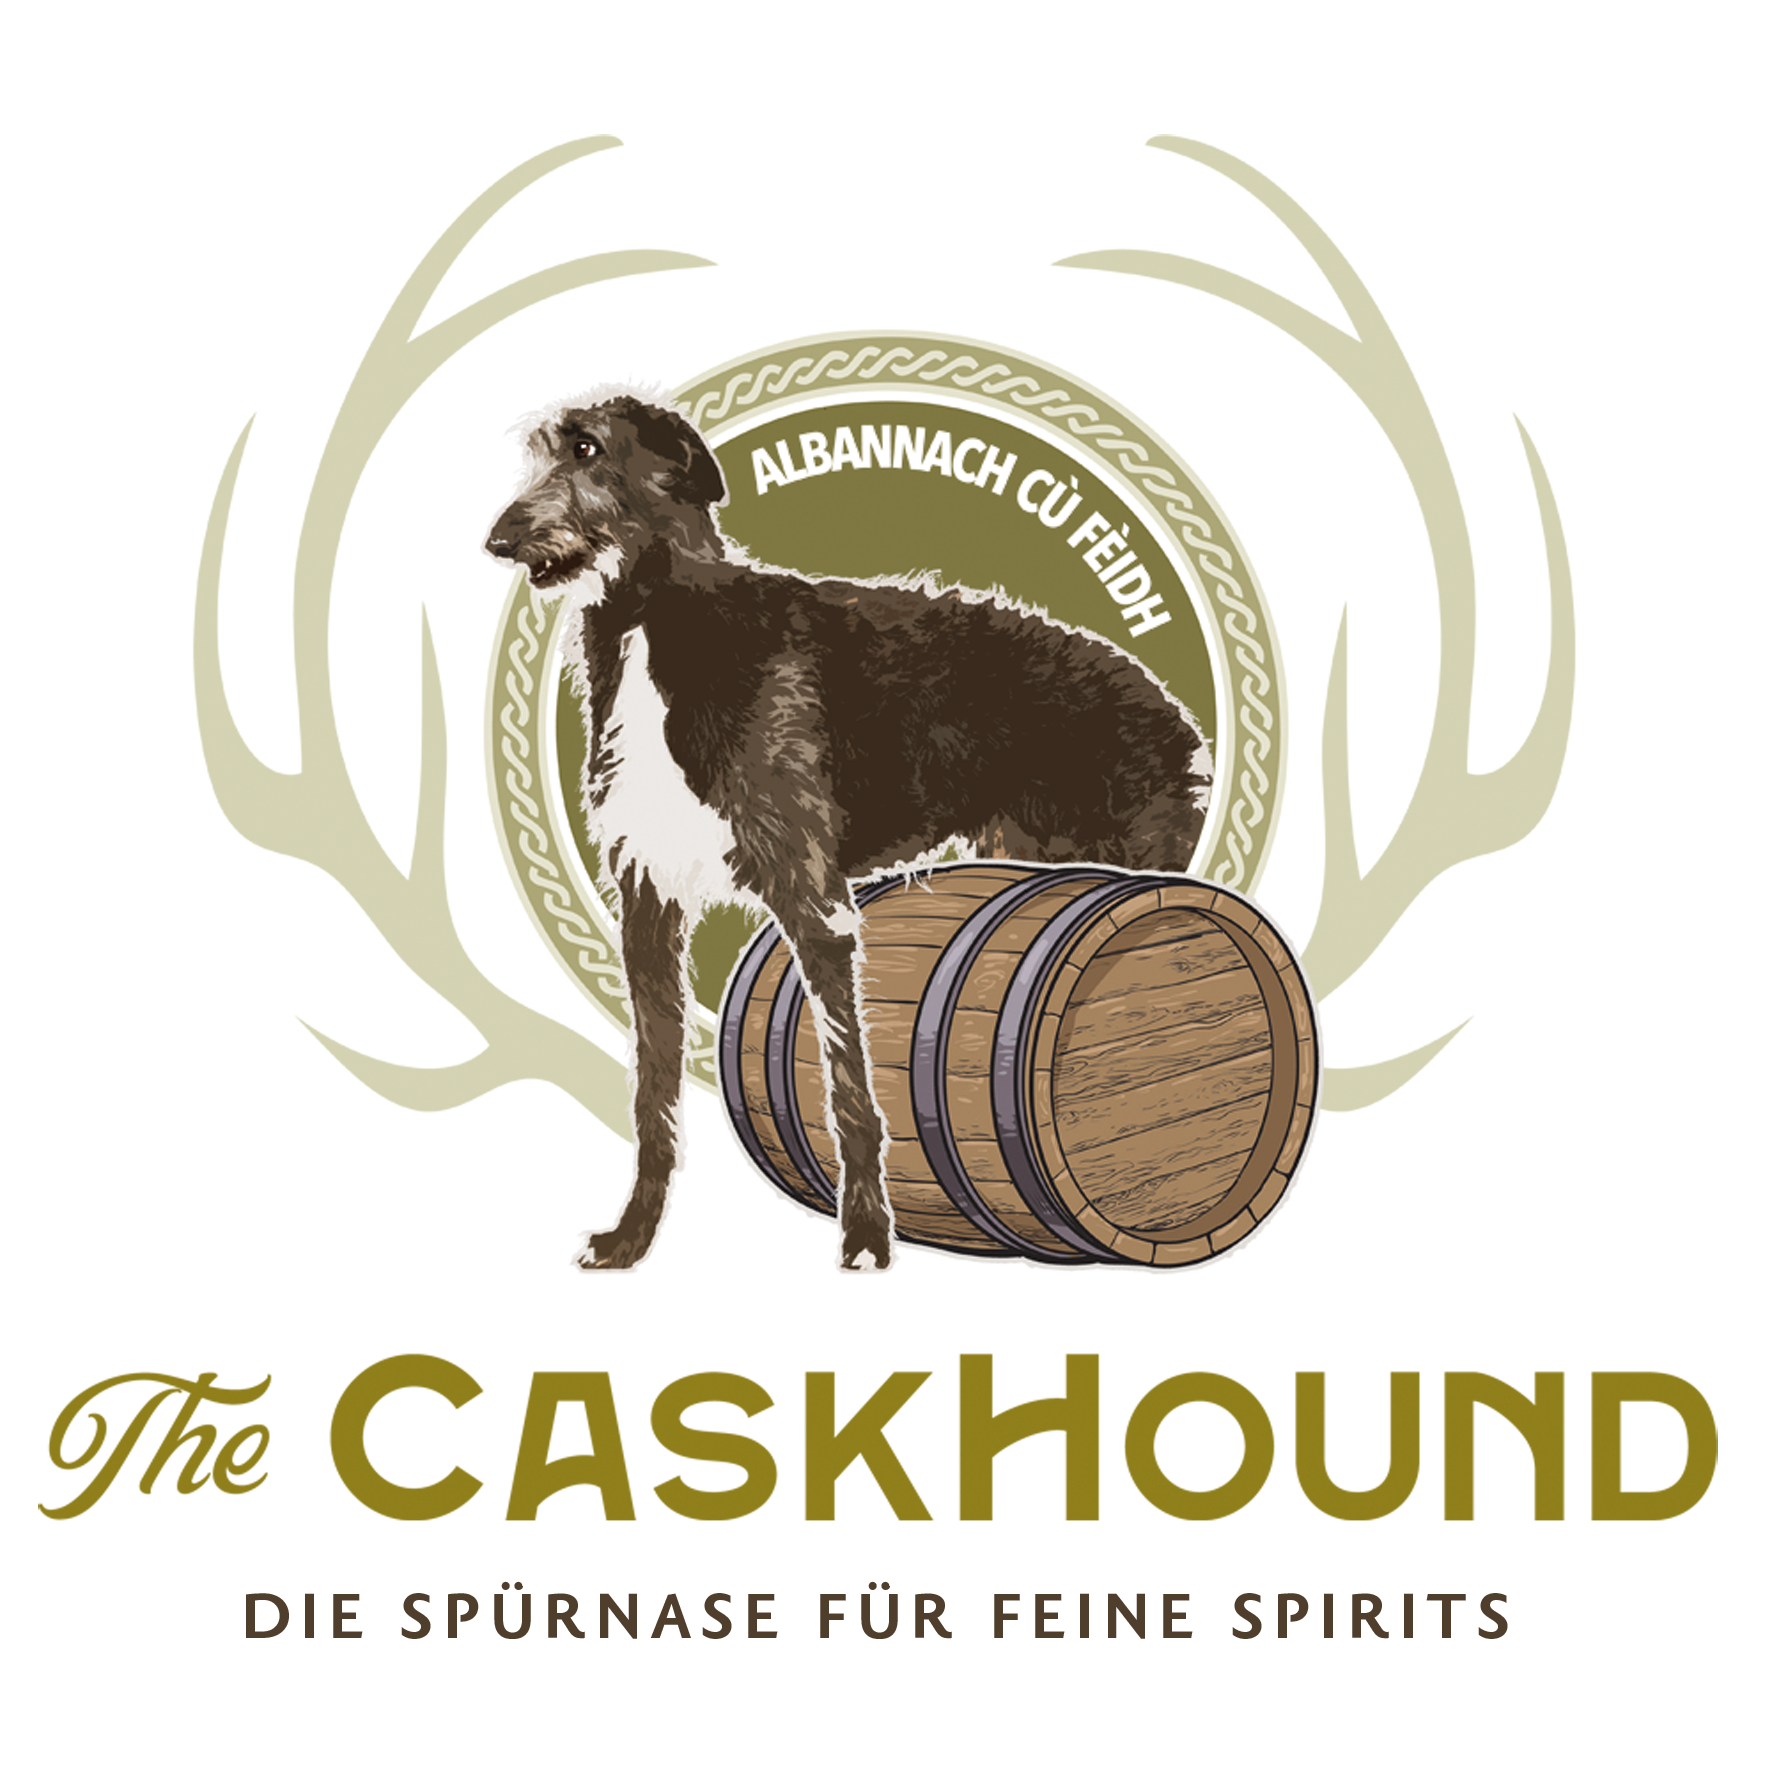 The Caskhound